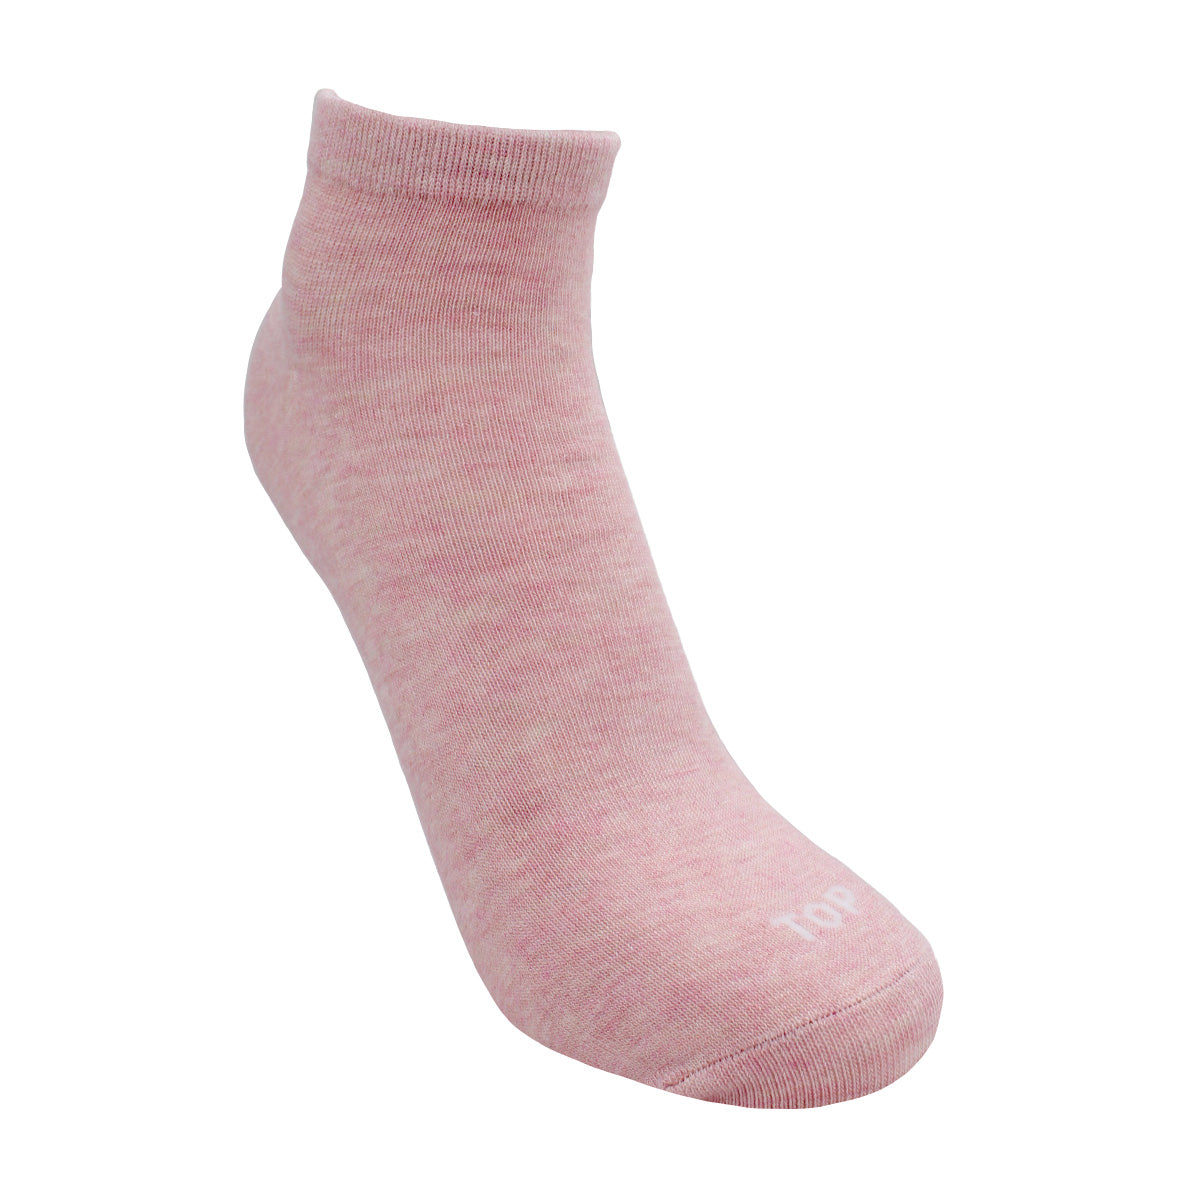 Calcetines tobilleros retro a rayas para mujer, paquete de 5 unidades,  blanco/rosa/verde, 4-10, Blanco/rosado/verde (White/Pink/Green)